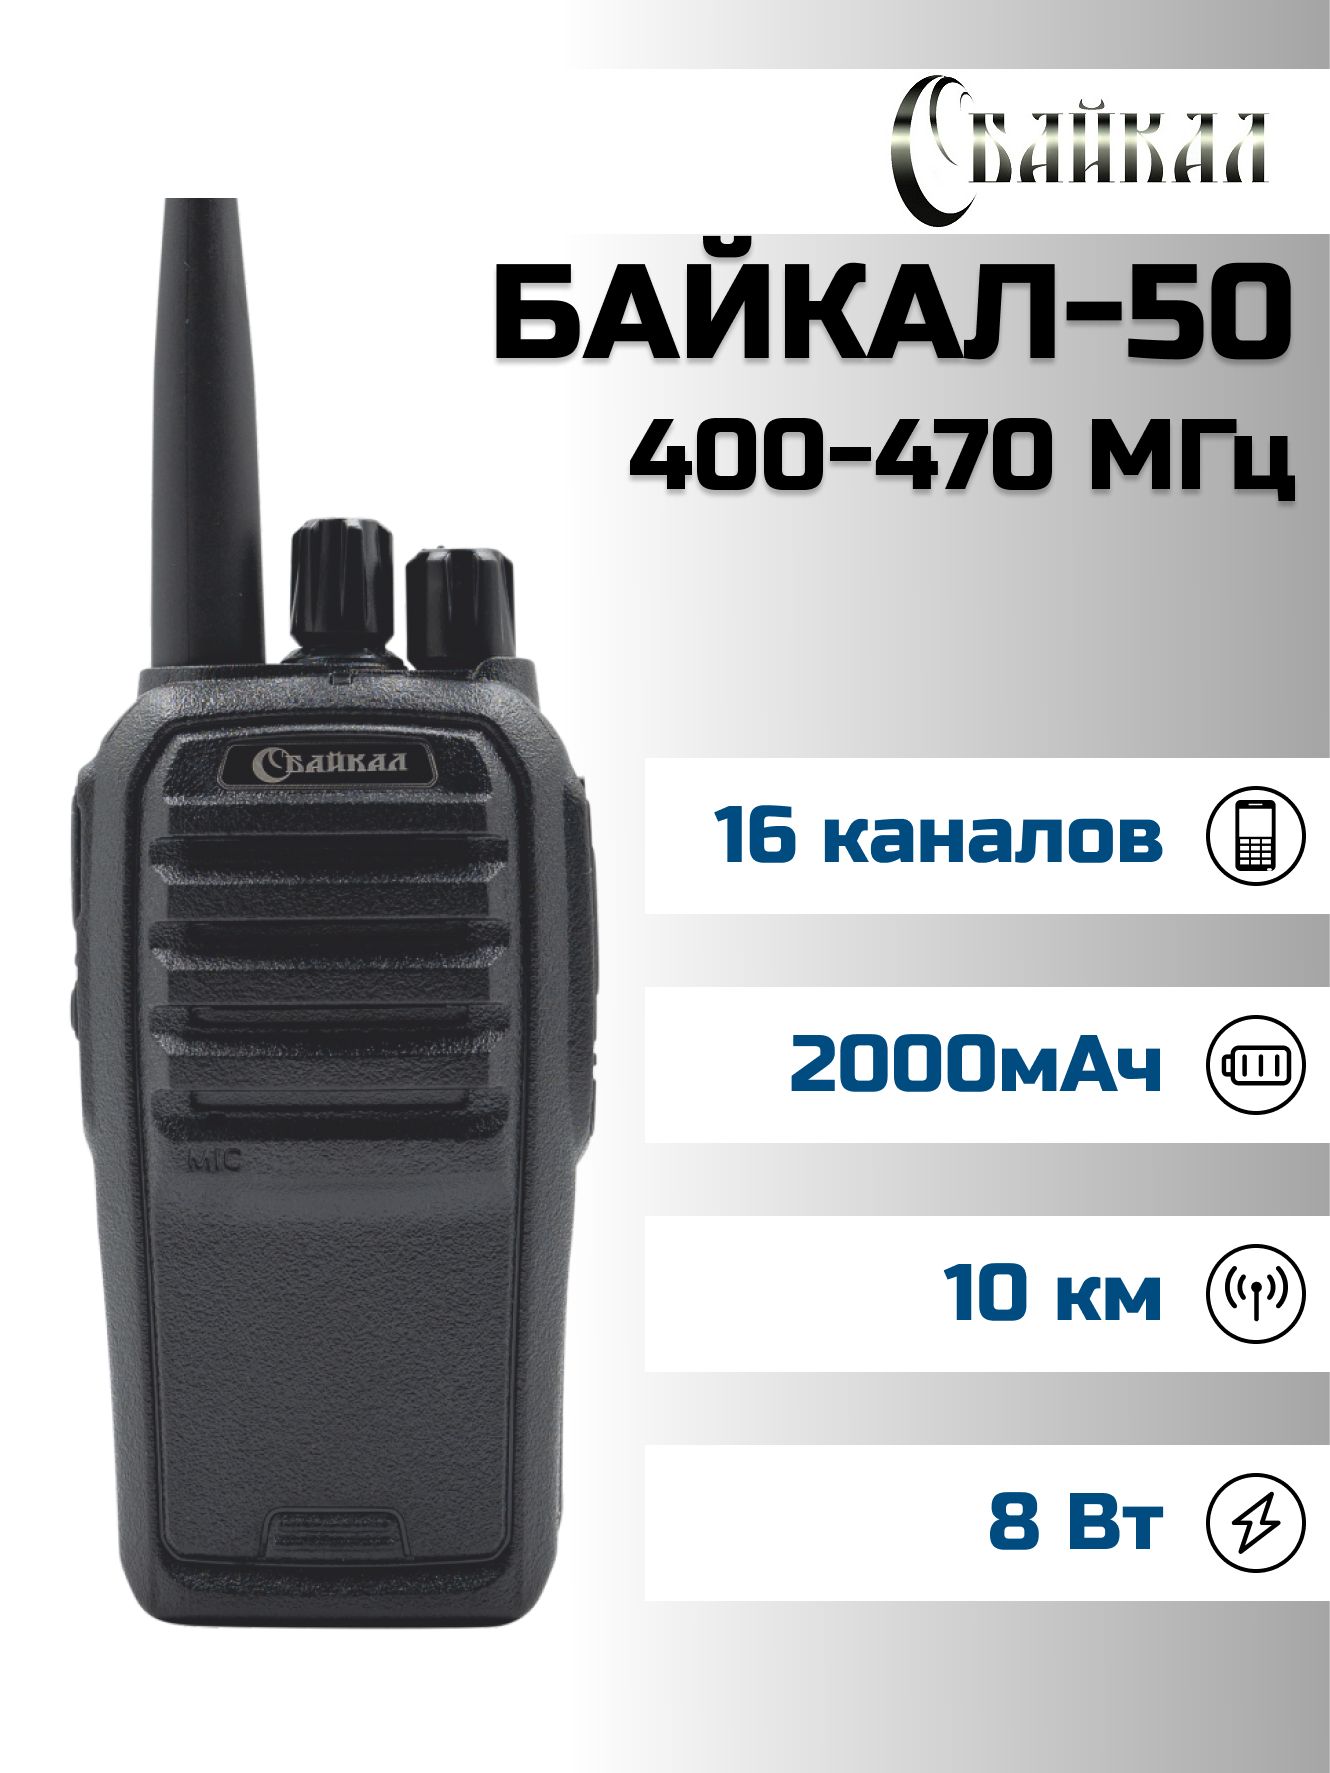 Портативная радиостанция Байкал-50 (400-470 МГц), 1800 мАч, 8Вт